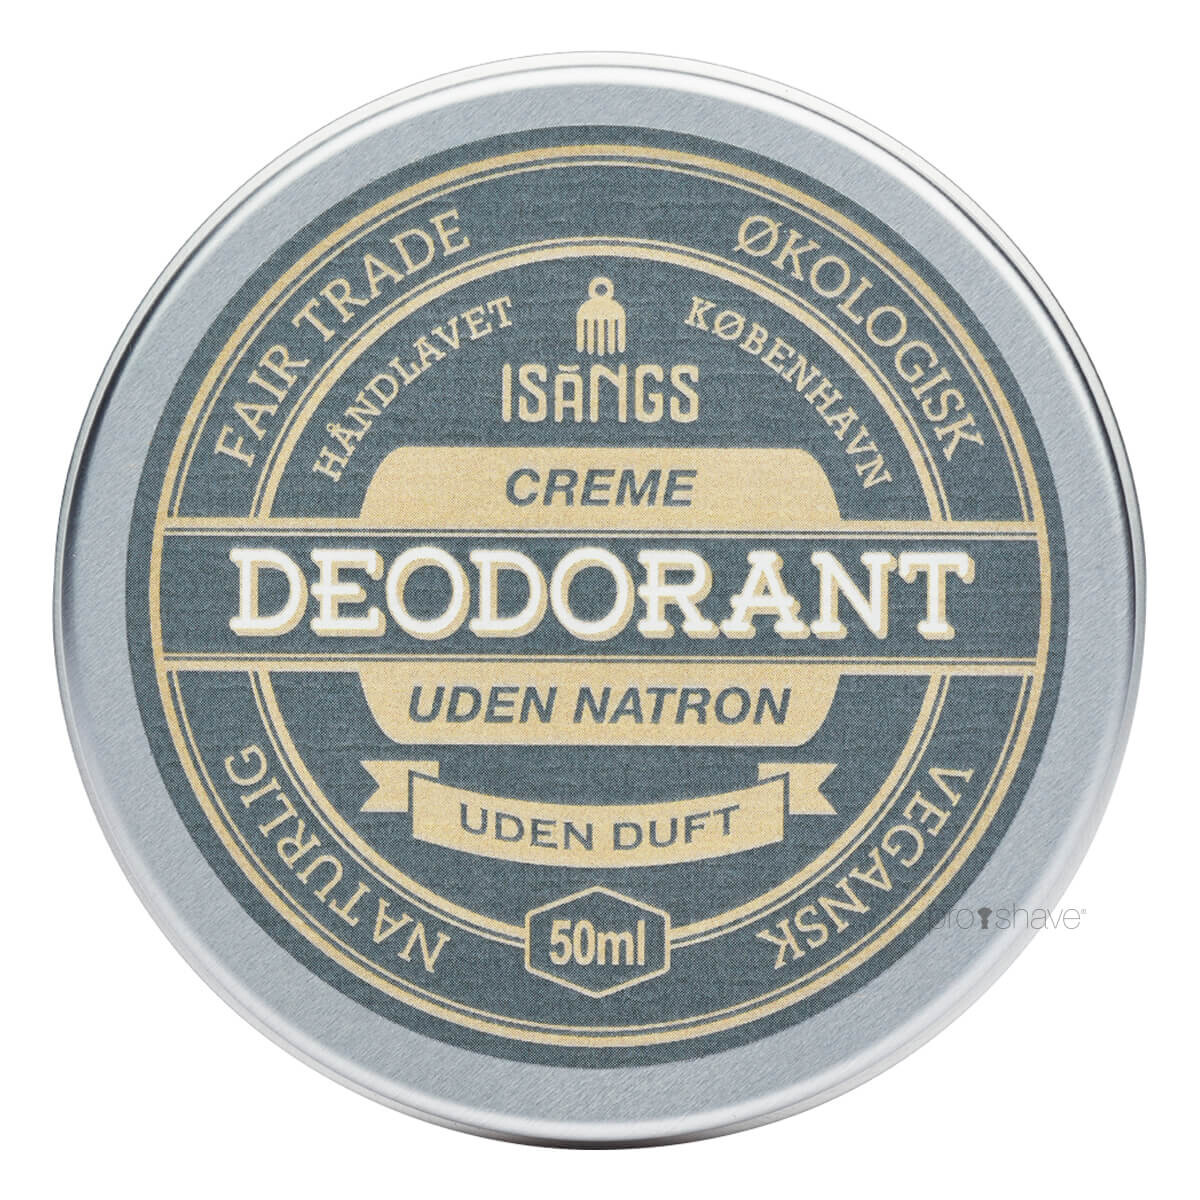 Billede af Isangs Creme Deodorant uden Natron, Uden duft, 50 ml.